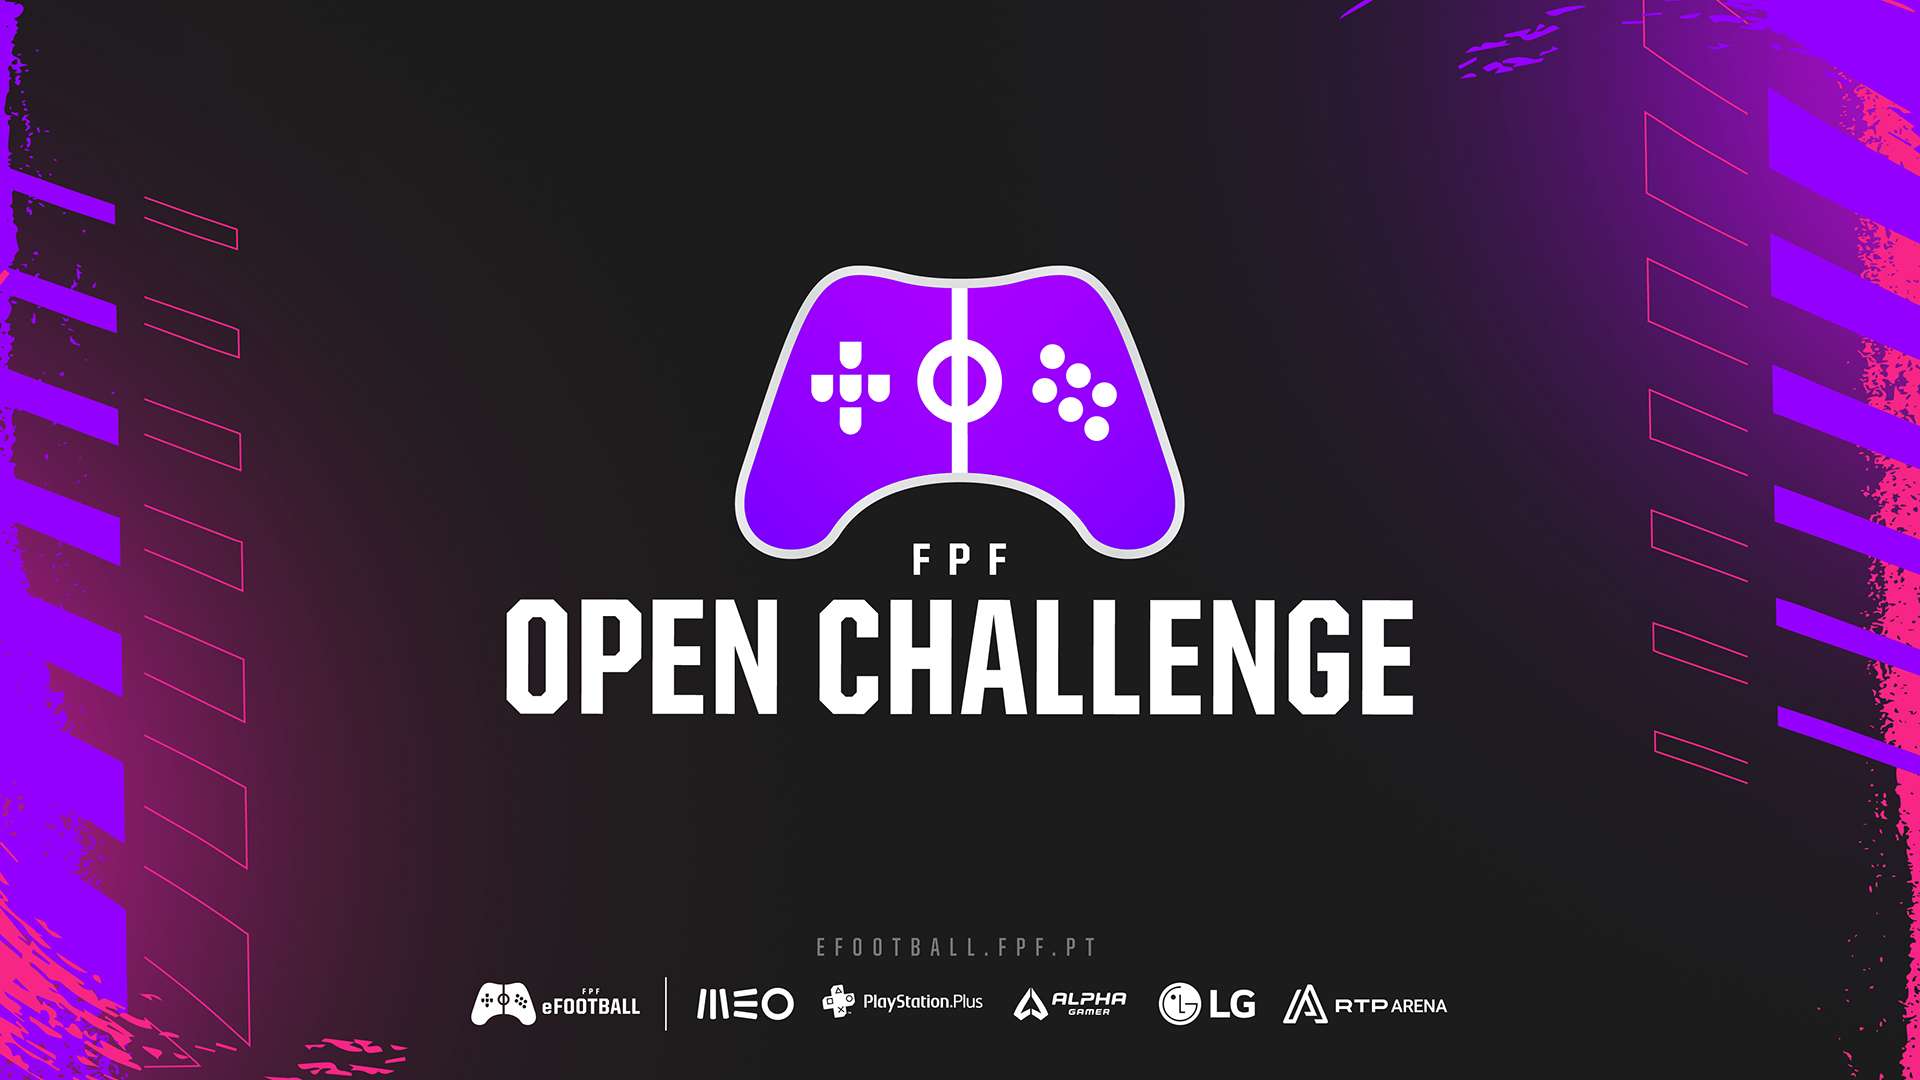 FPF Open Challenge